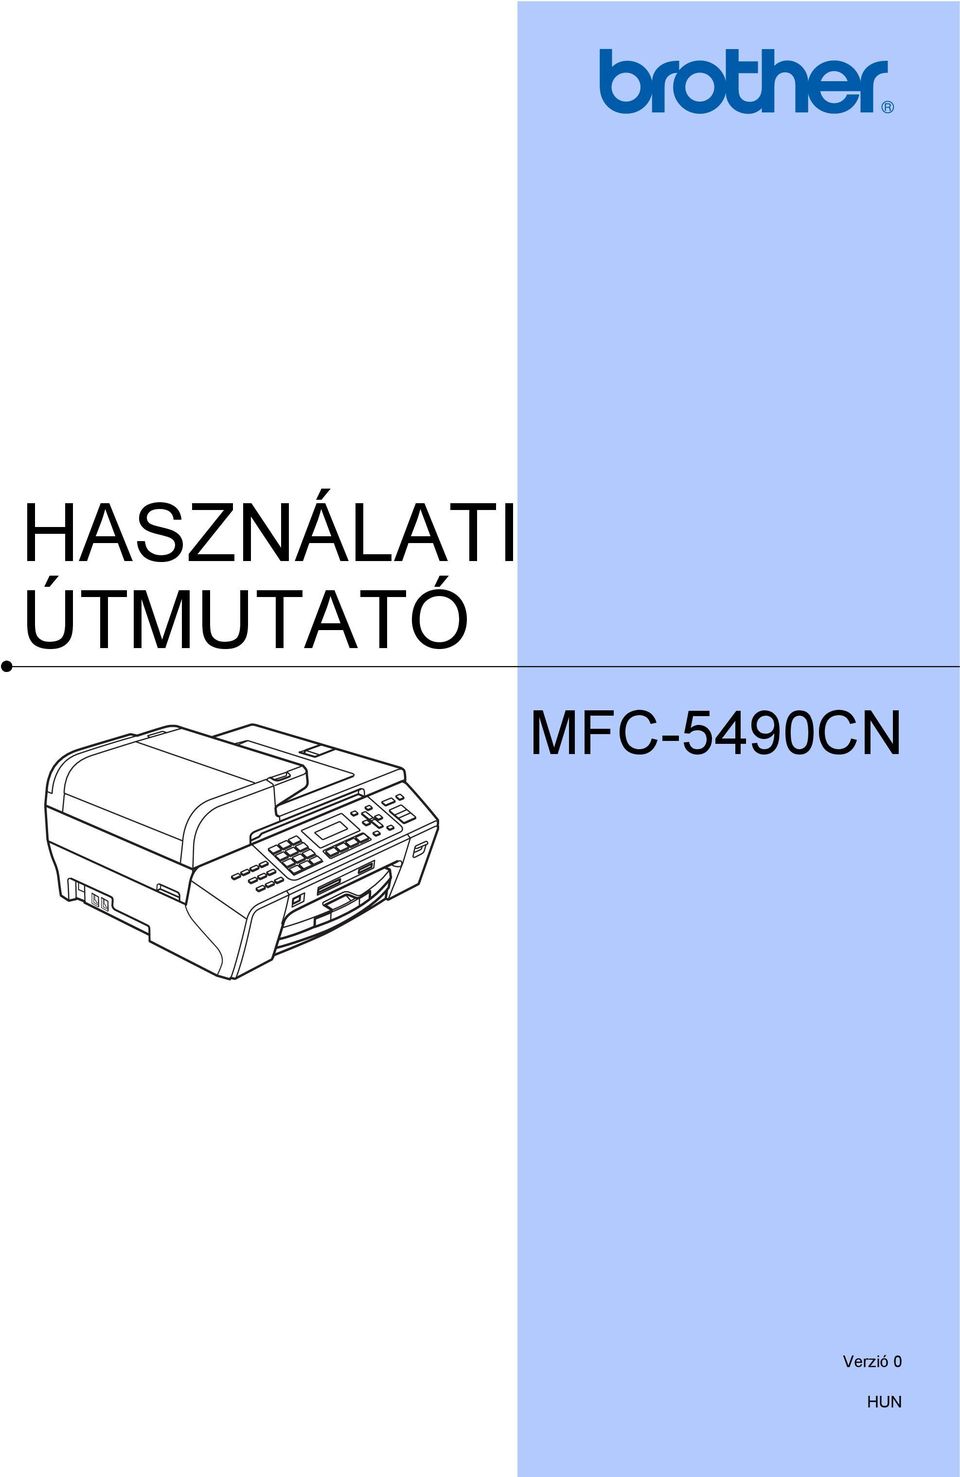 MFC-5490CN